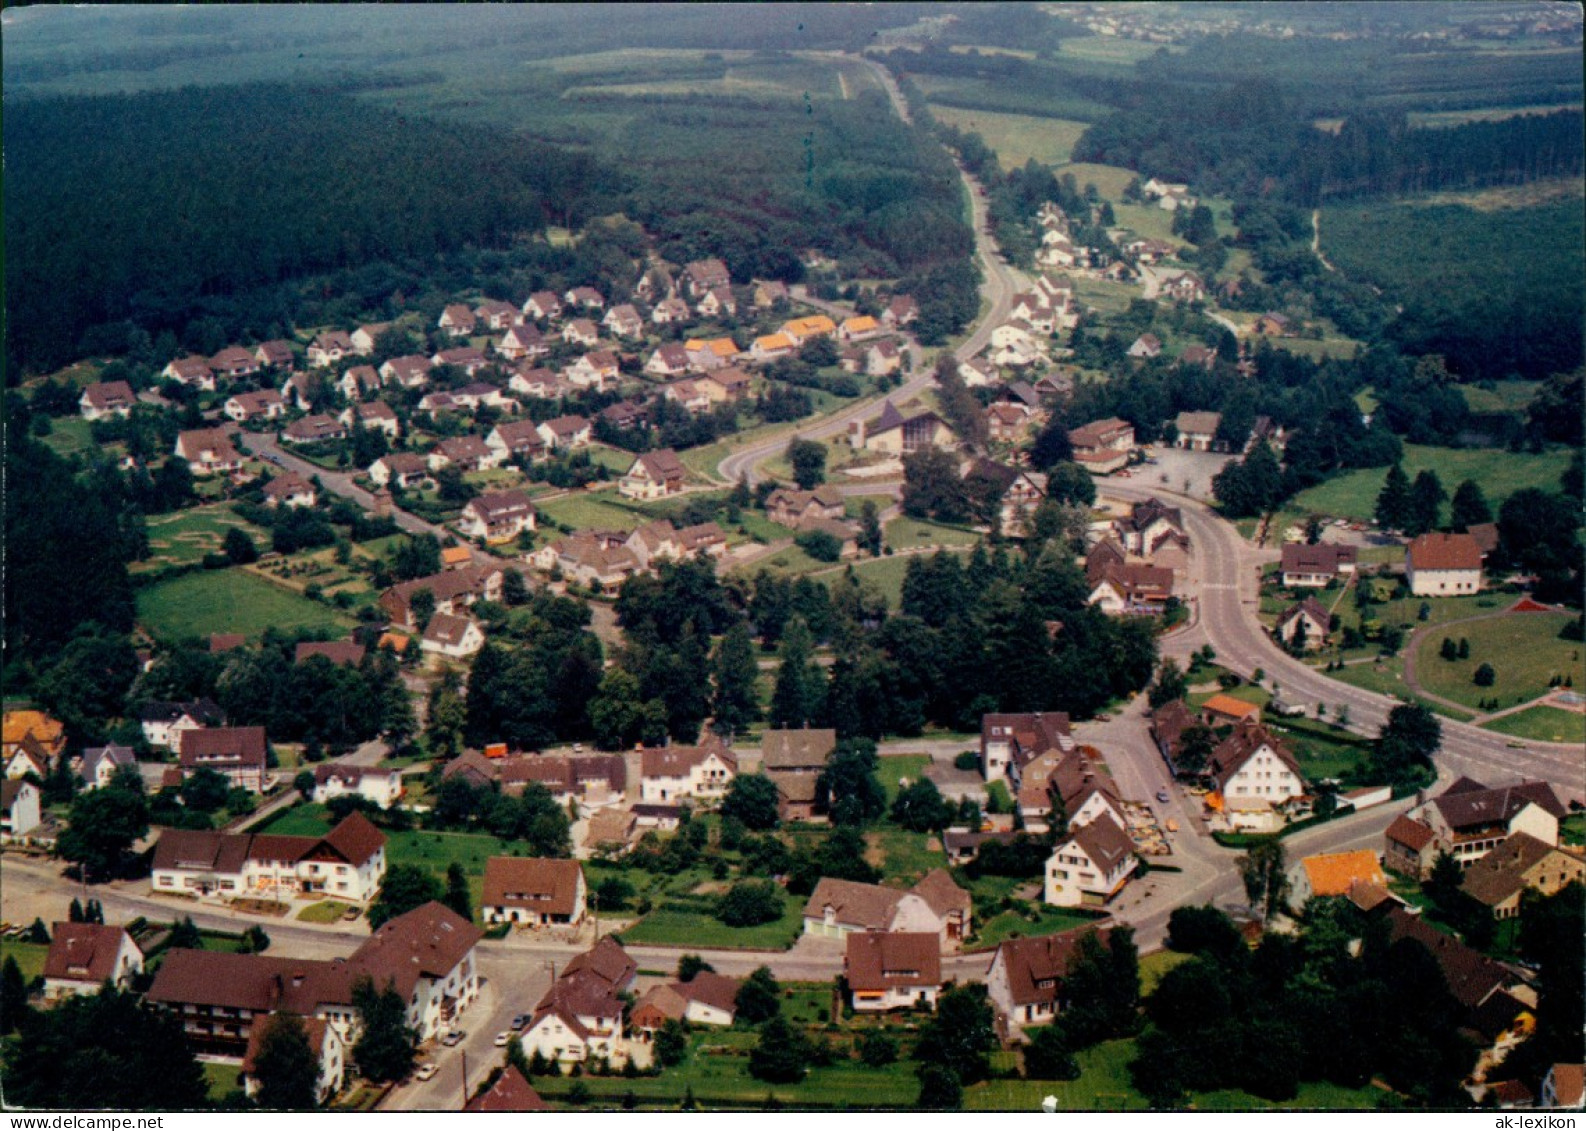 Ansichtskarte Neuhaus Im Solling-Holzminden Luftbild Luftaufnahme 1981/1980 - Holzminden